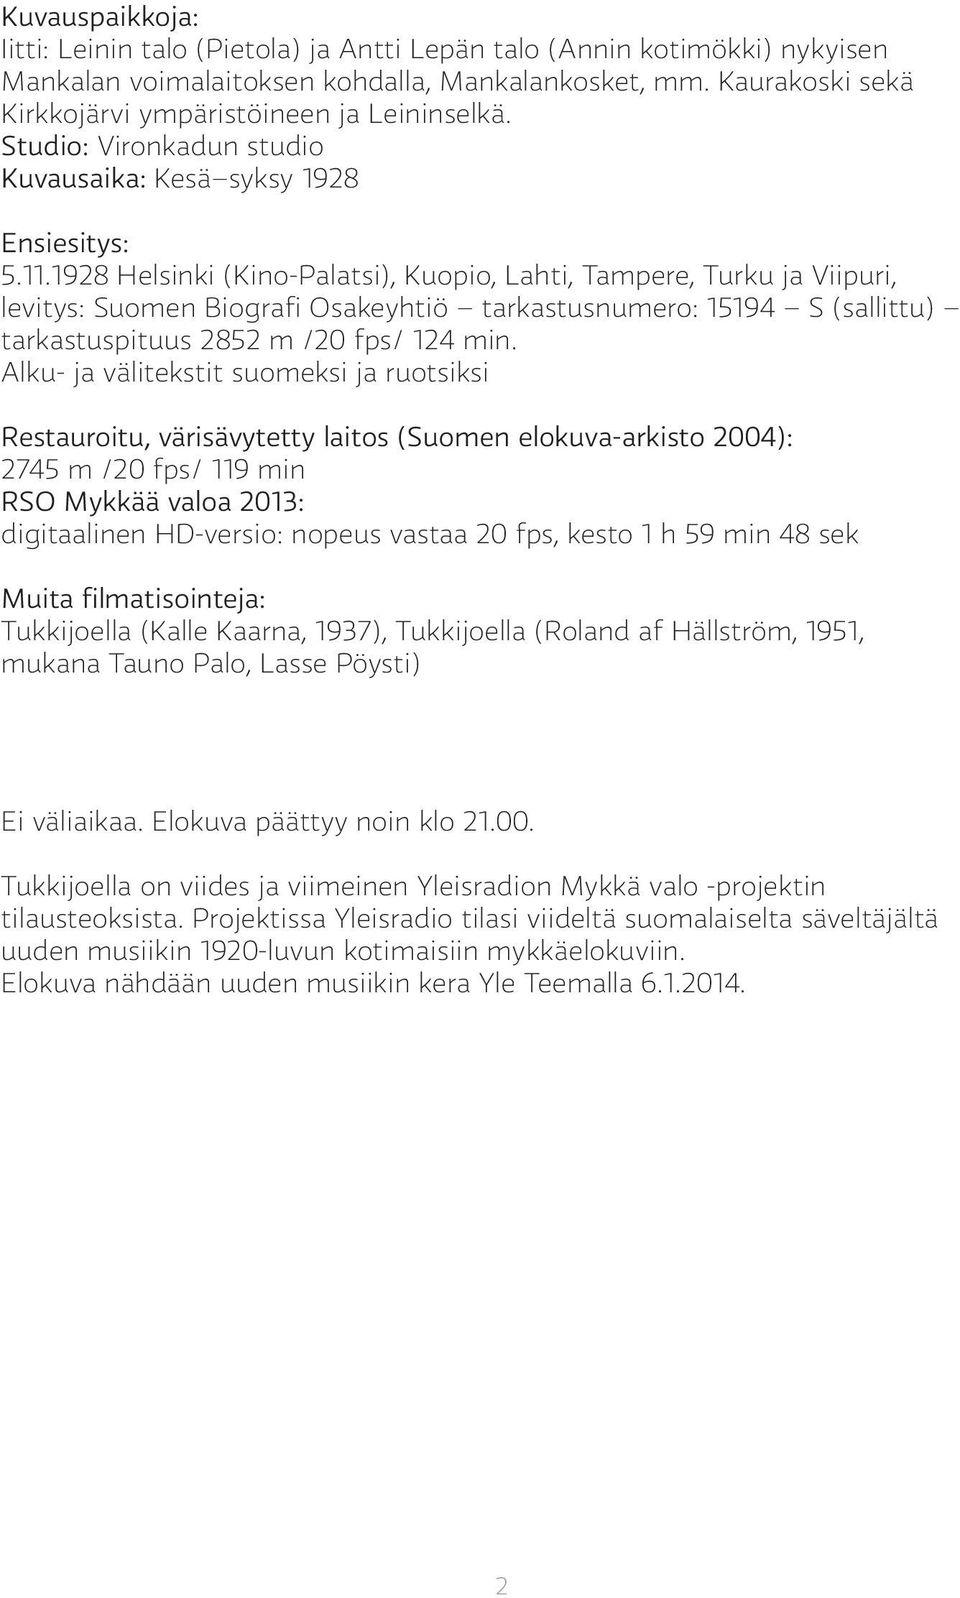 1928 Helsinki (Kino-Palatsi), Kuopio, Lahti, Tampere, Turku ja Viipuri, levitys: Suomen Biografi Osakeyhtiö tarkastusnumero: 15194 S (sallittu) tarkastuspituus 2852 m /20 fps/ 124 min.